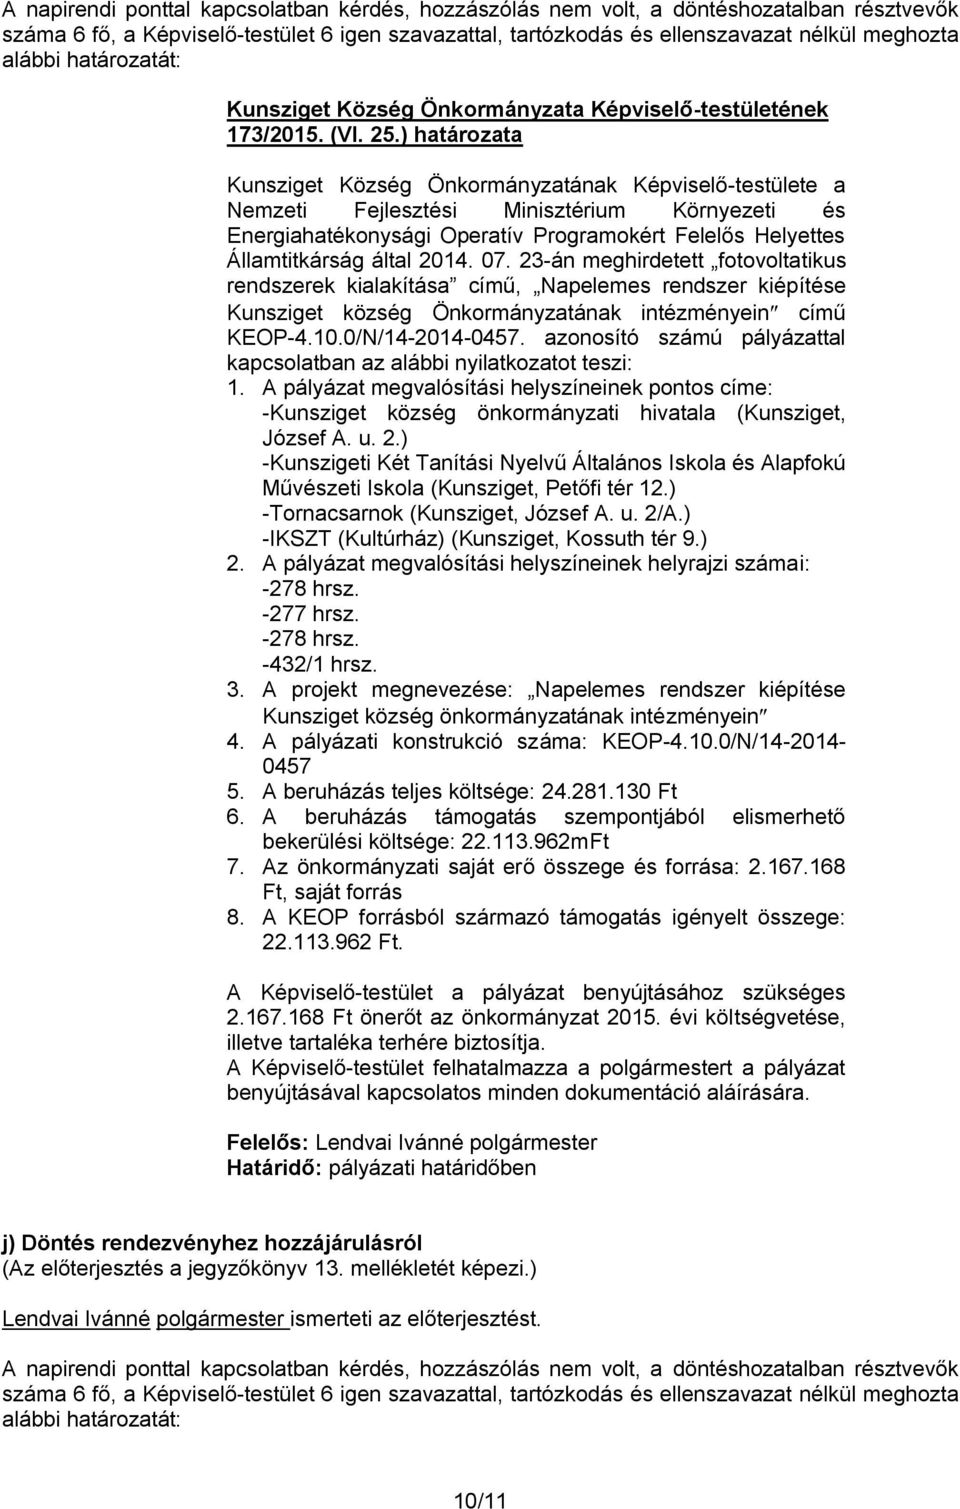 23-án meghirdetett fotovoltatikus rendszerek kialakítása című, Napelemes rendszer kiépítése Kunsziget község Önkormányzatának intézményein című KEOP-4.10.0/N/14-2014-0457.